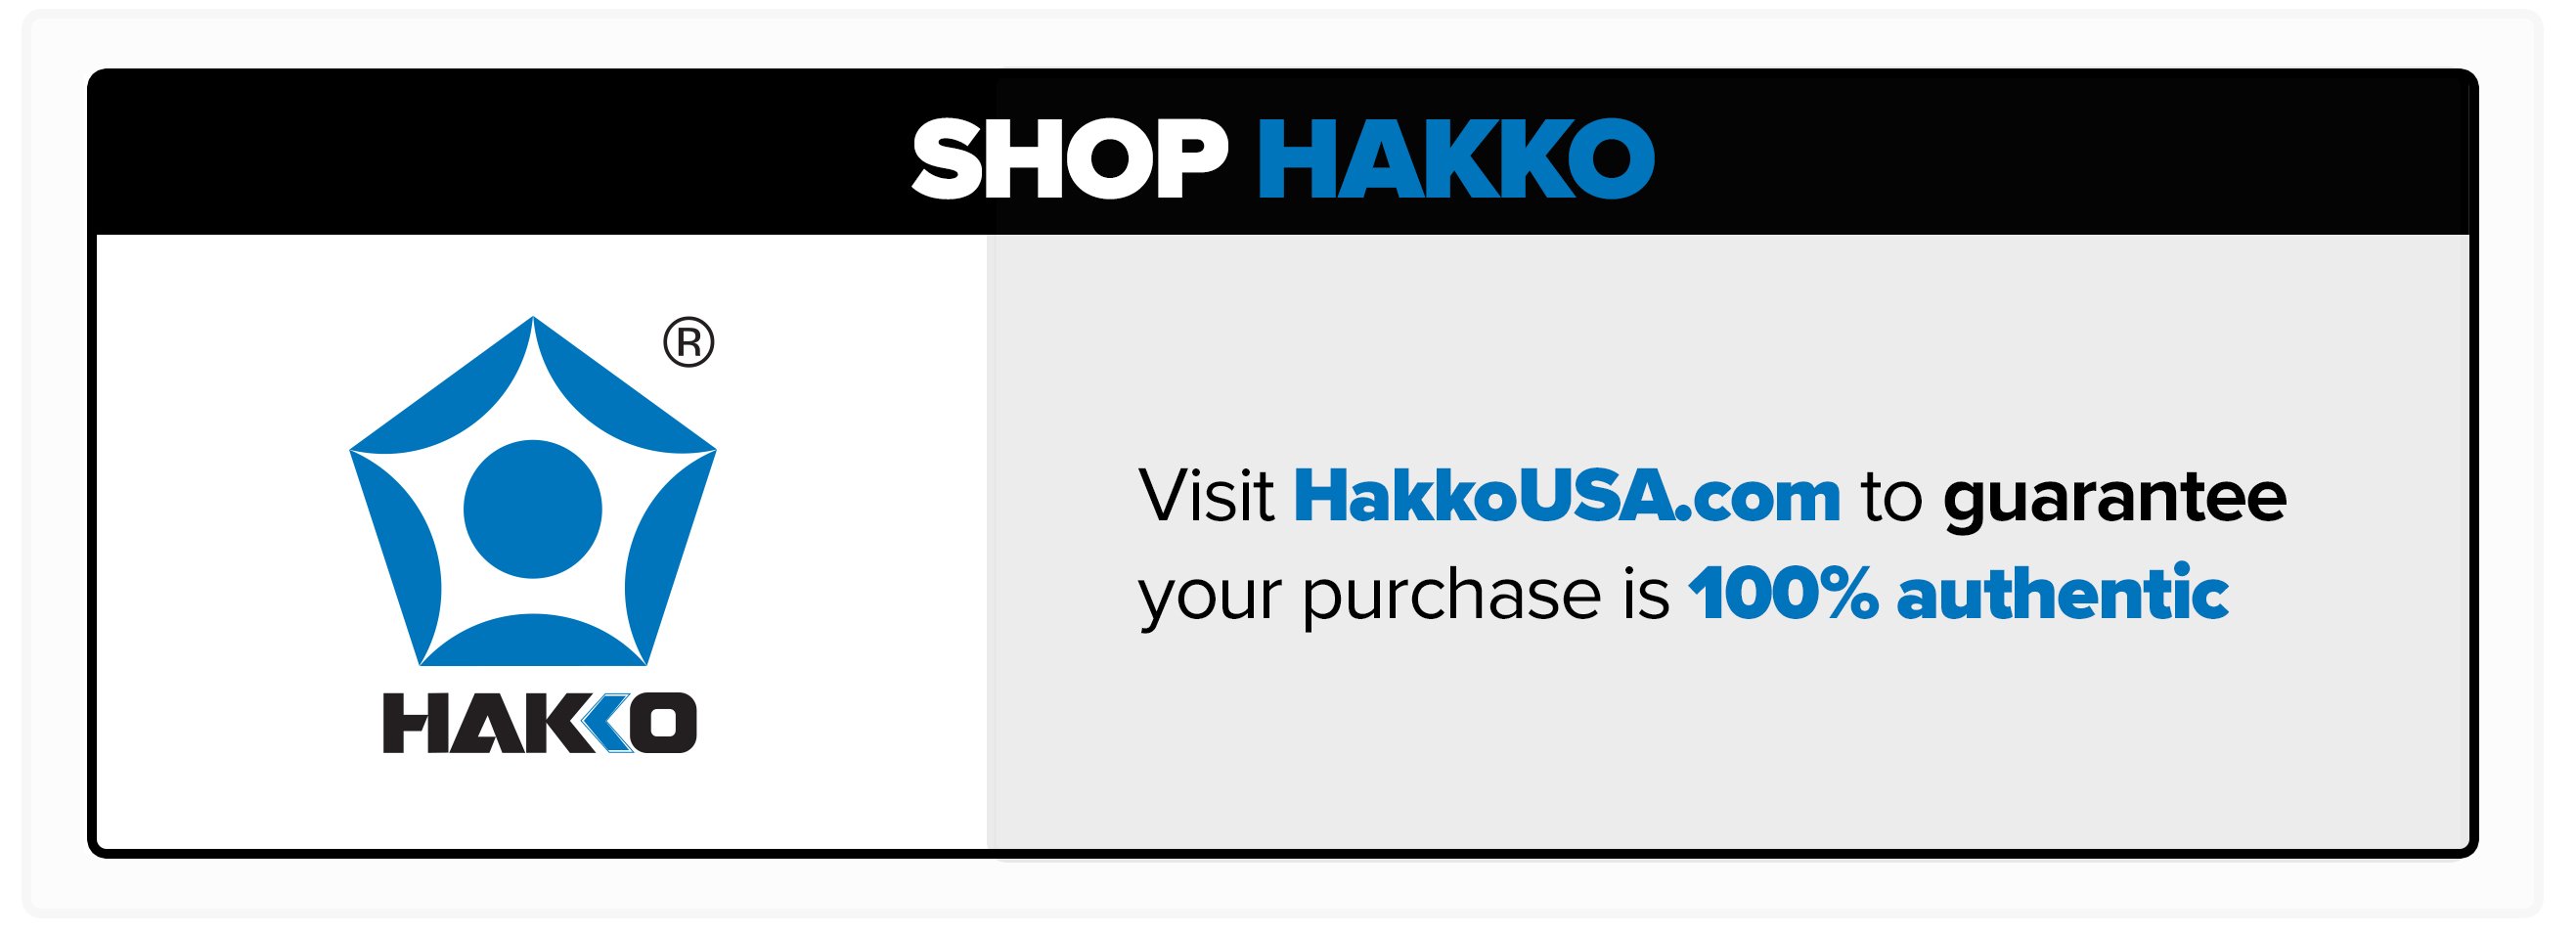 Shop Hakko